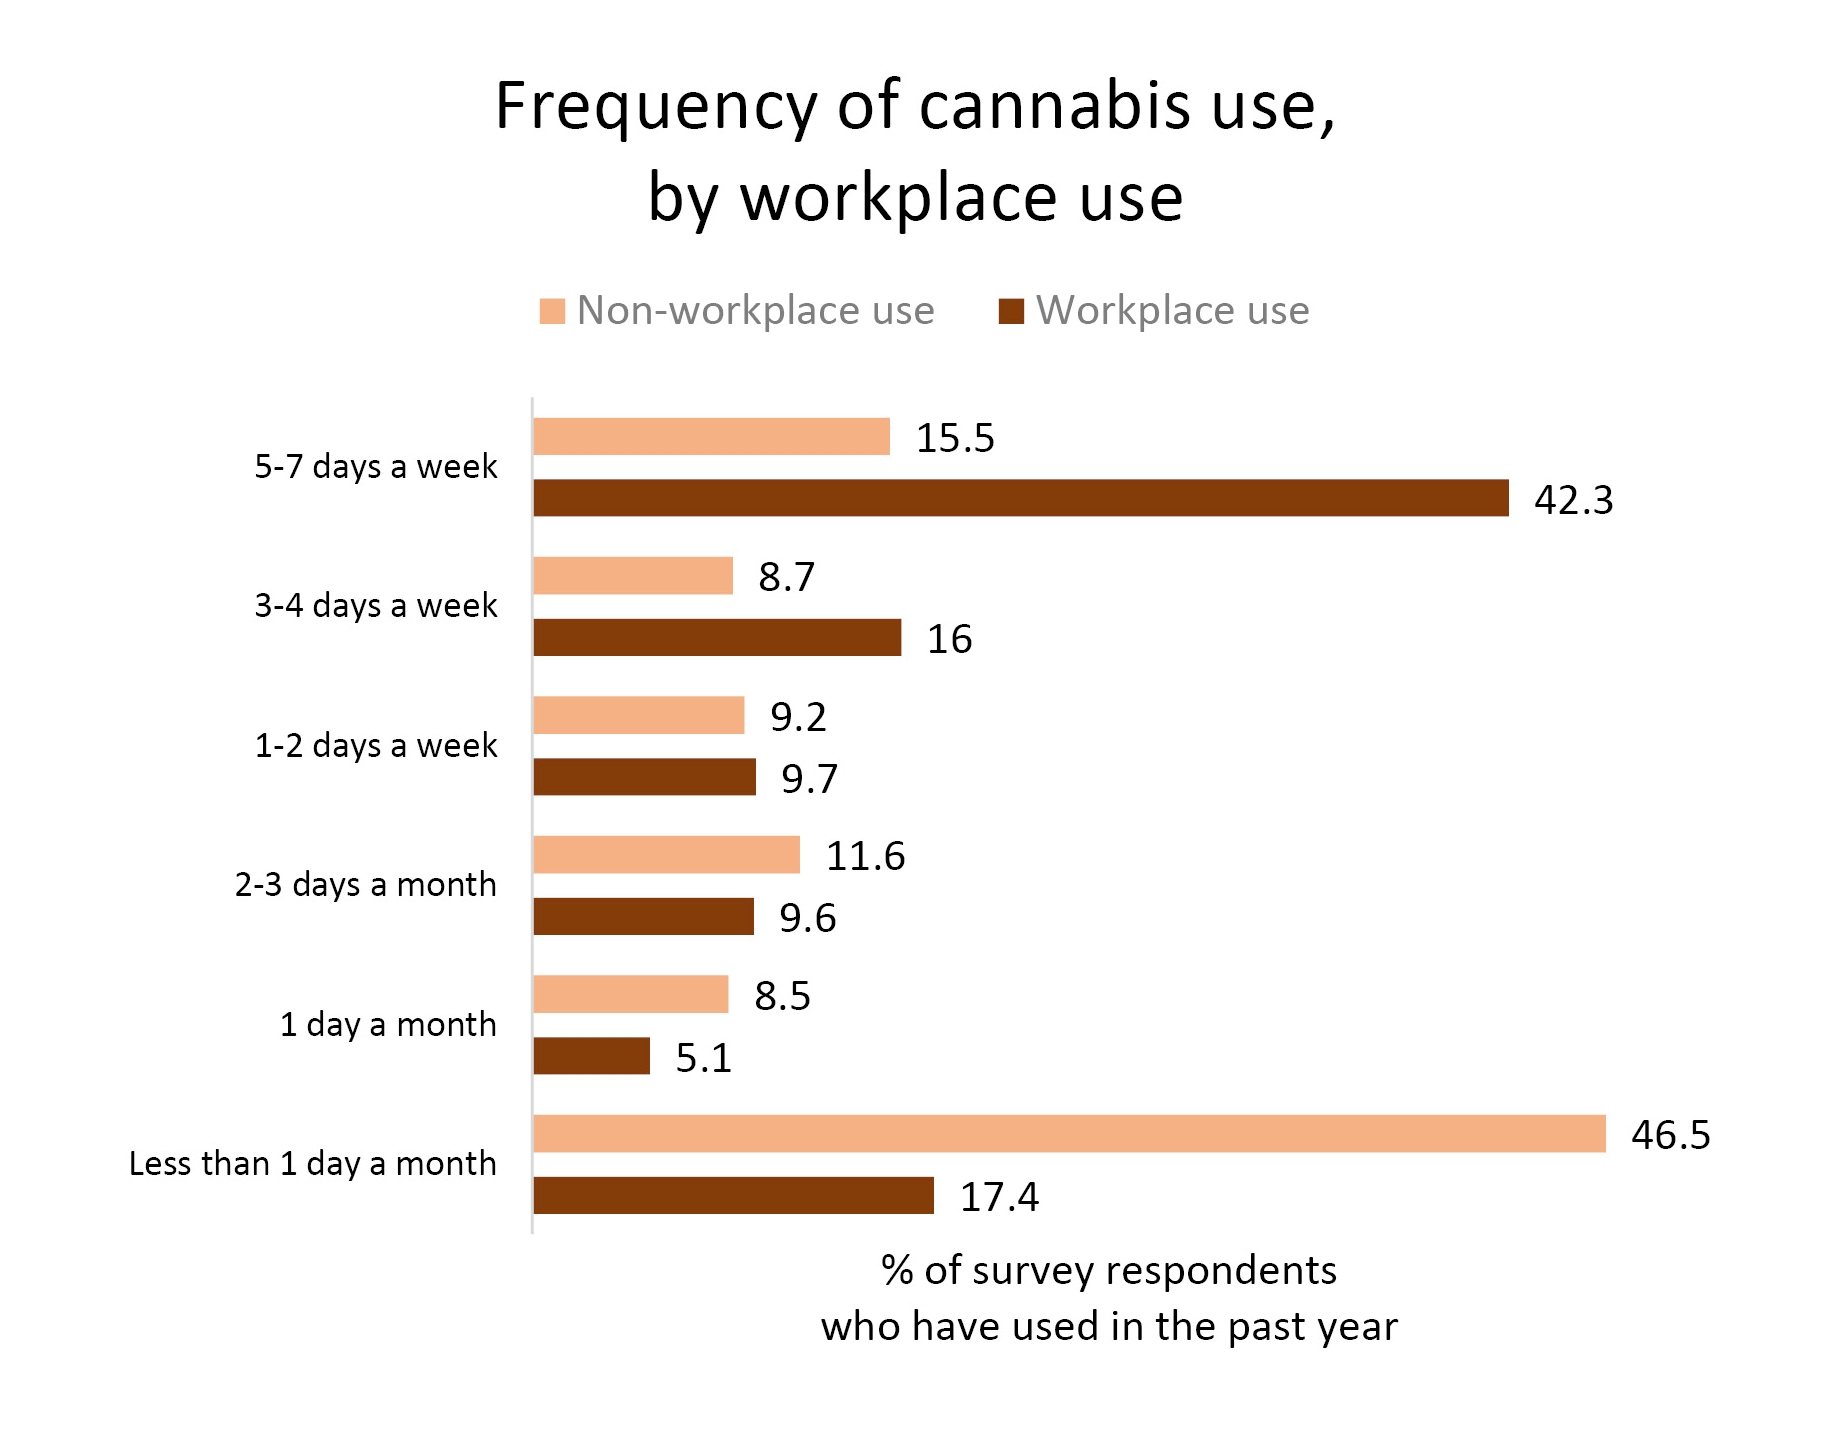 Un grafico a barre che mostra la frequenza del consumo di cannabis in due gruppi, quelli che hanno consumato cannabis nell'ultimo anno ma non al lavoro e quelli che hanno utilizzato nell'ultimo anno e al lavoro.  Tra gli utenti non lavorativi, la quota maggiore (46,5%) utilizza meno di una volta al mese.  Tra i consumatori al lavoro, la quota maggiore (42,3%) ha consumato cannabis da cinque a sette giorni alla settimana.